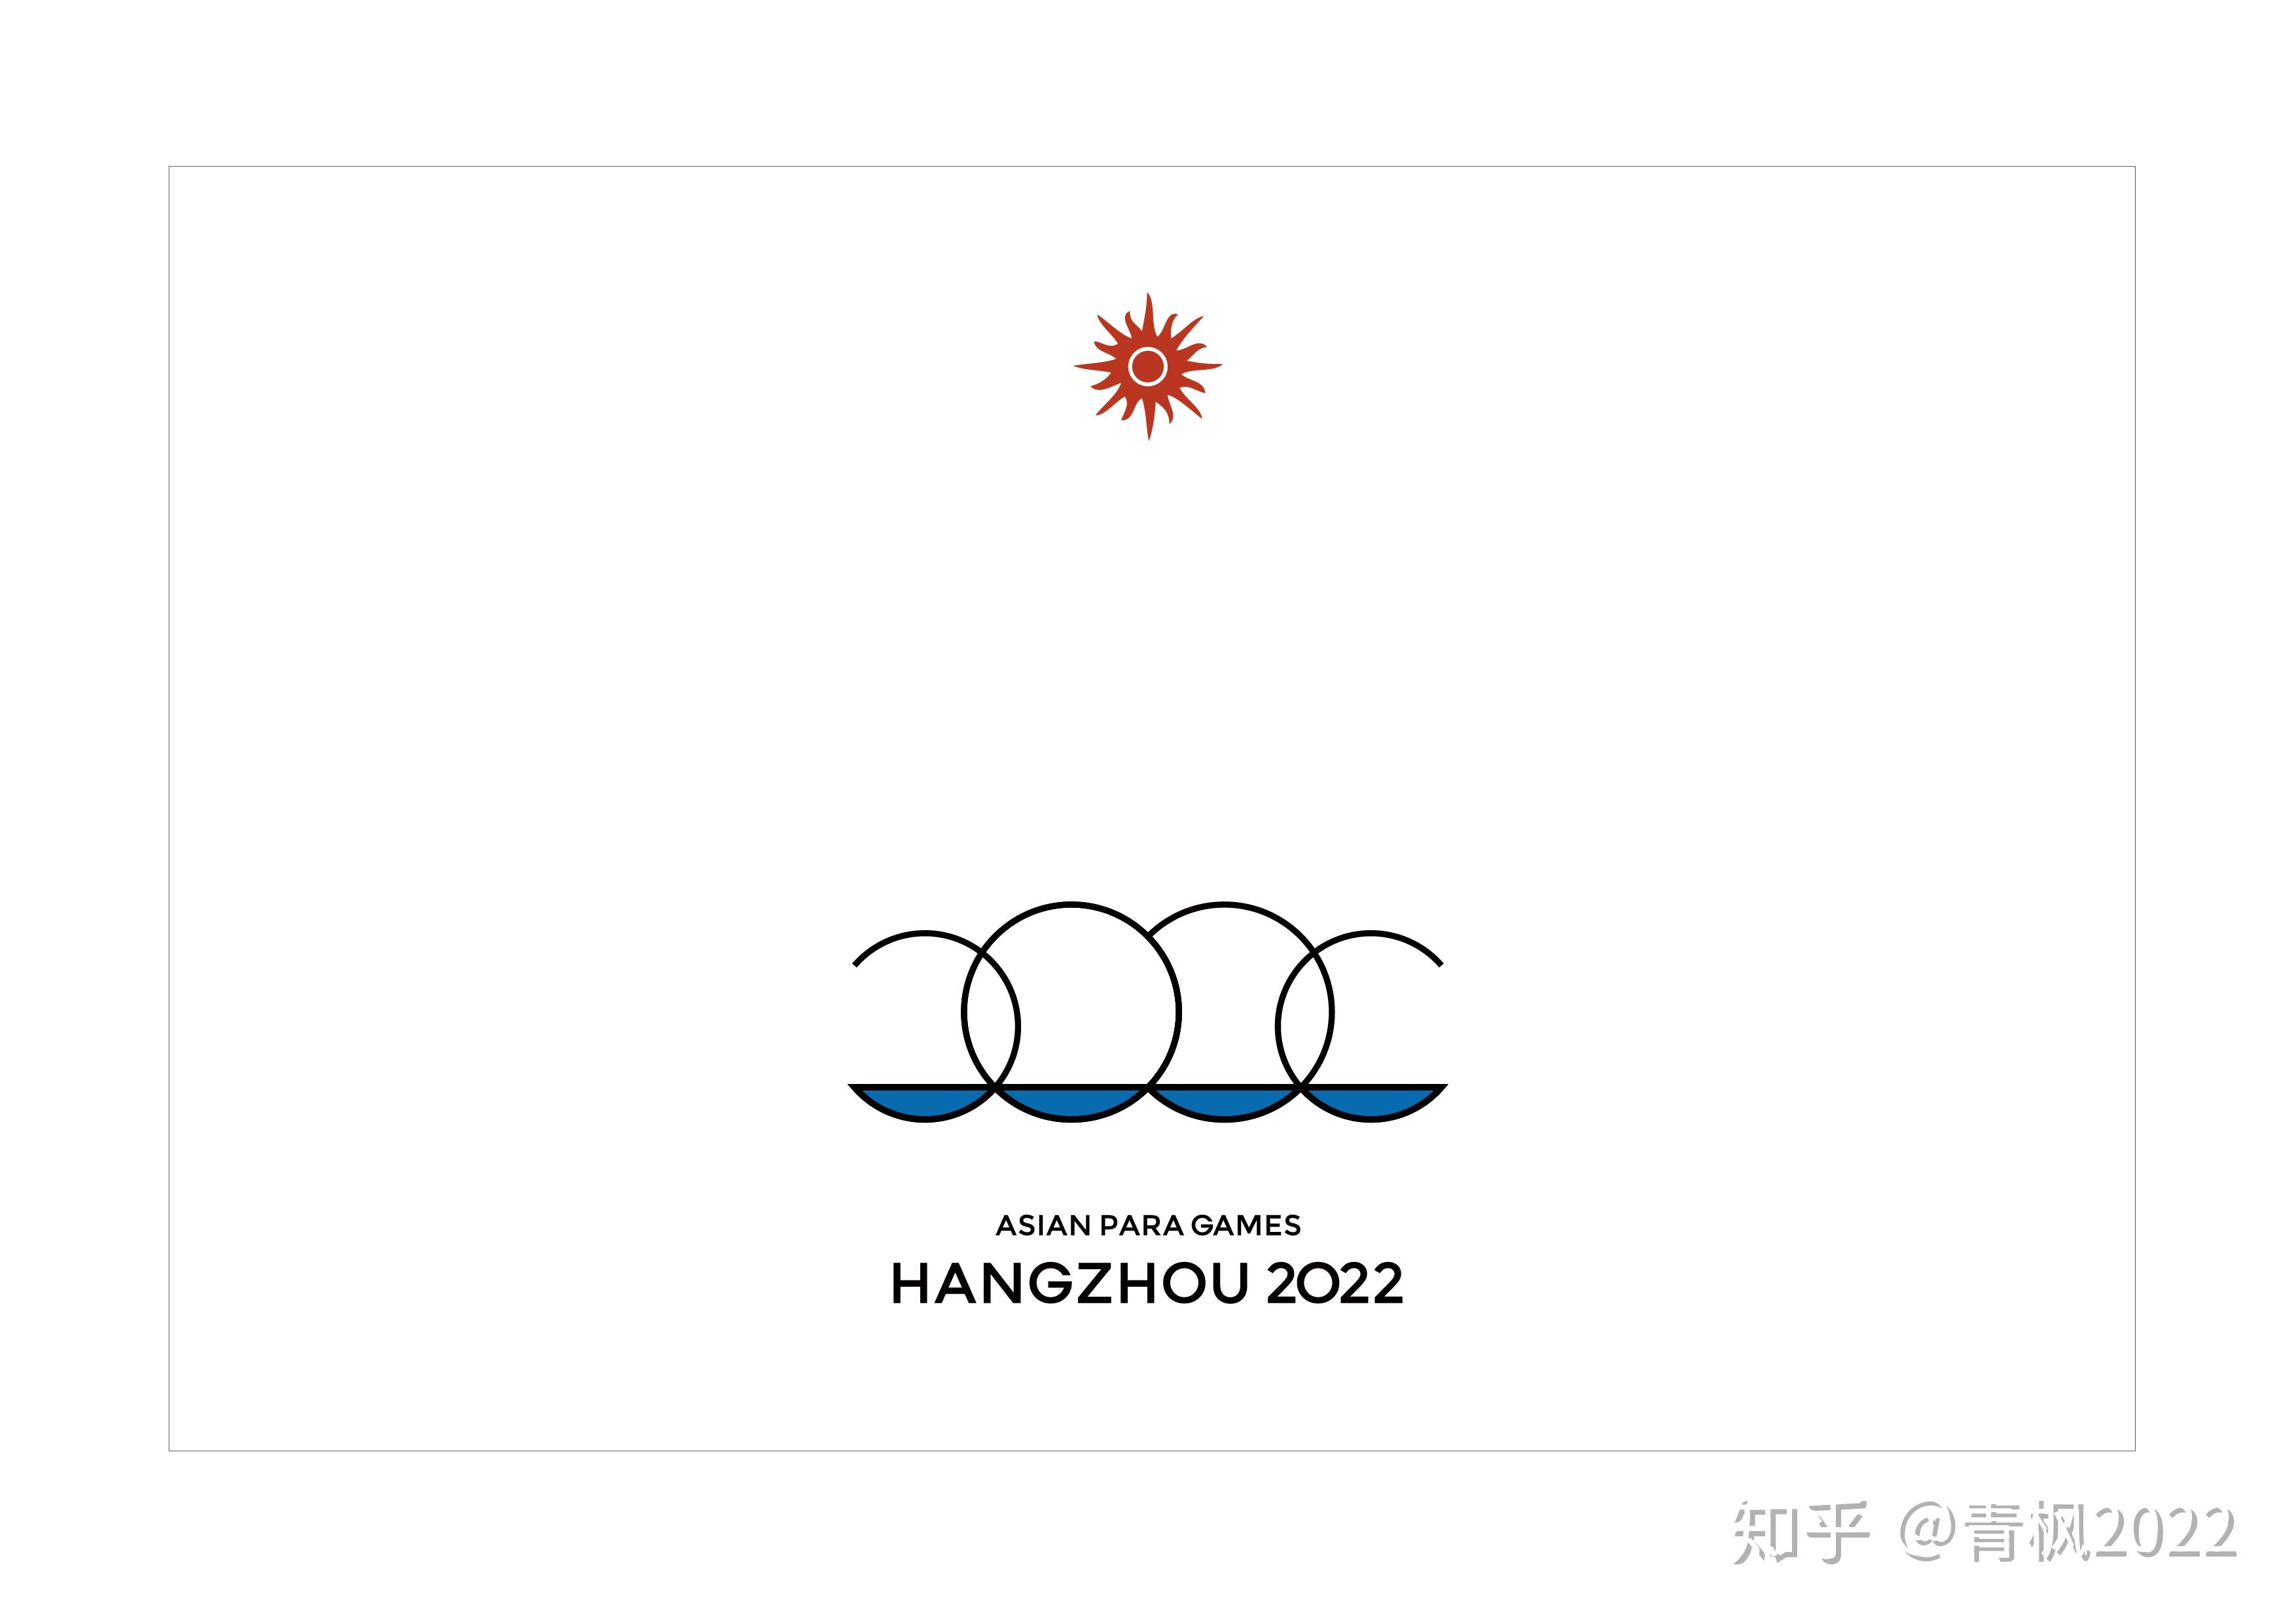 杭州亚运会 图标图片